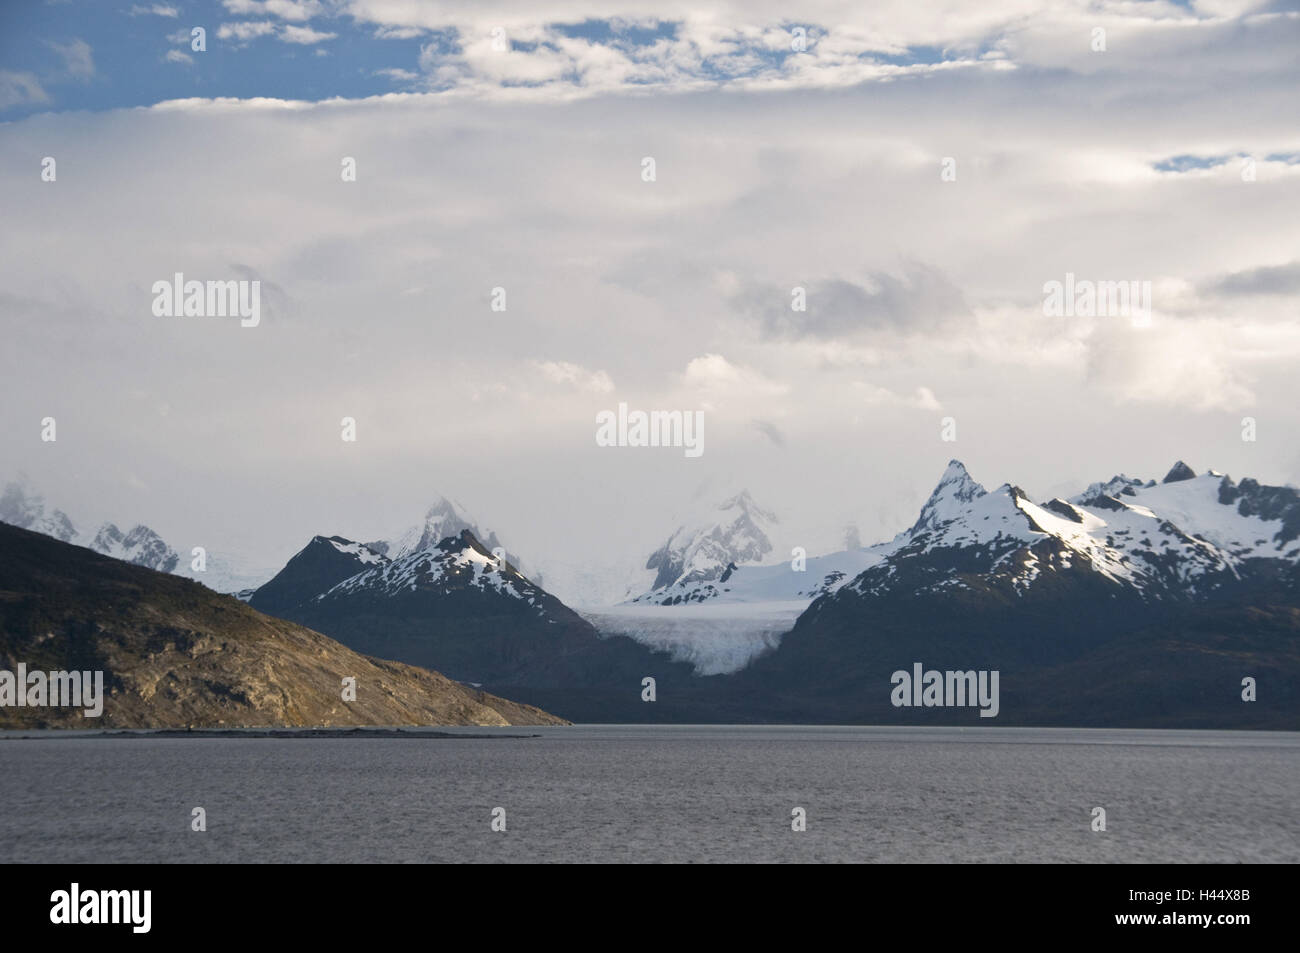 Chile, fjord scenery, fjord Almirantazgo, Andes catena, Cordillera Darwin, cloudy sky, Stock Photo